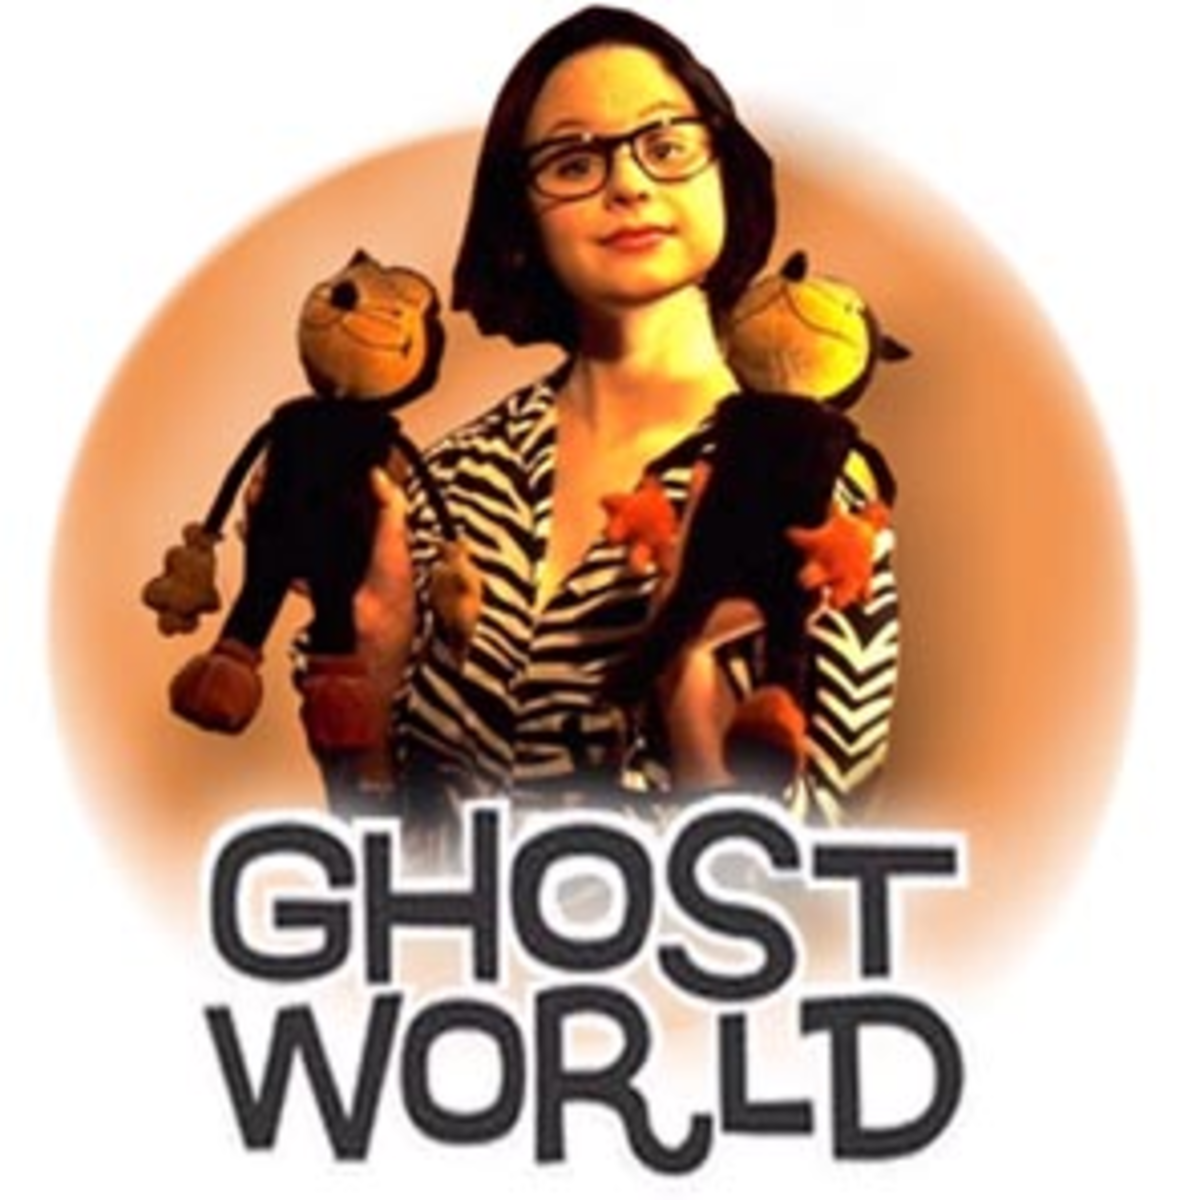 "Ghost World" stars Thora Birch